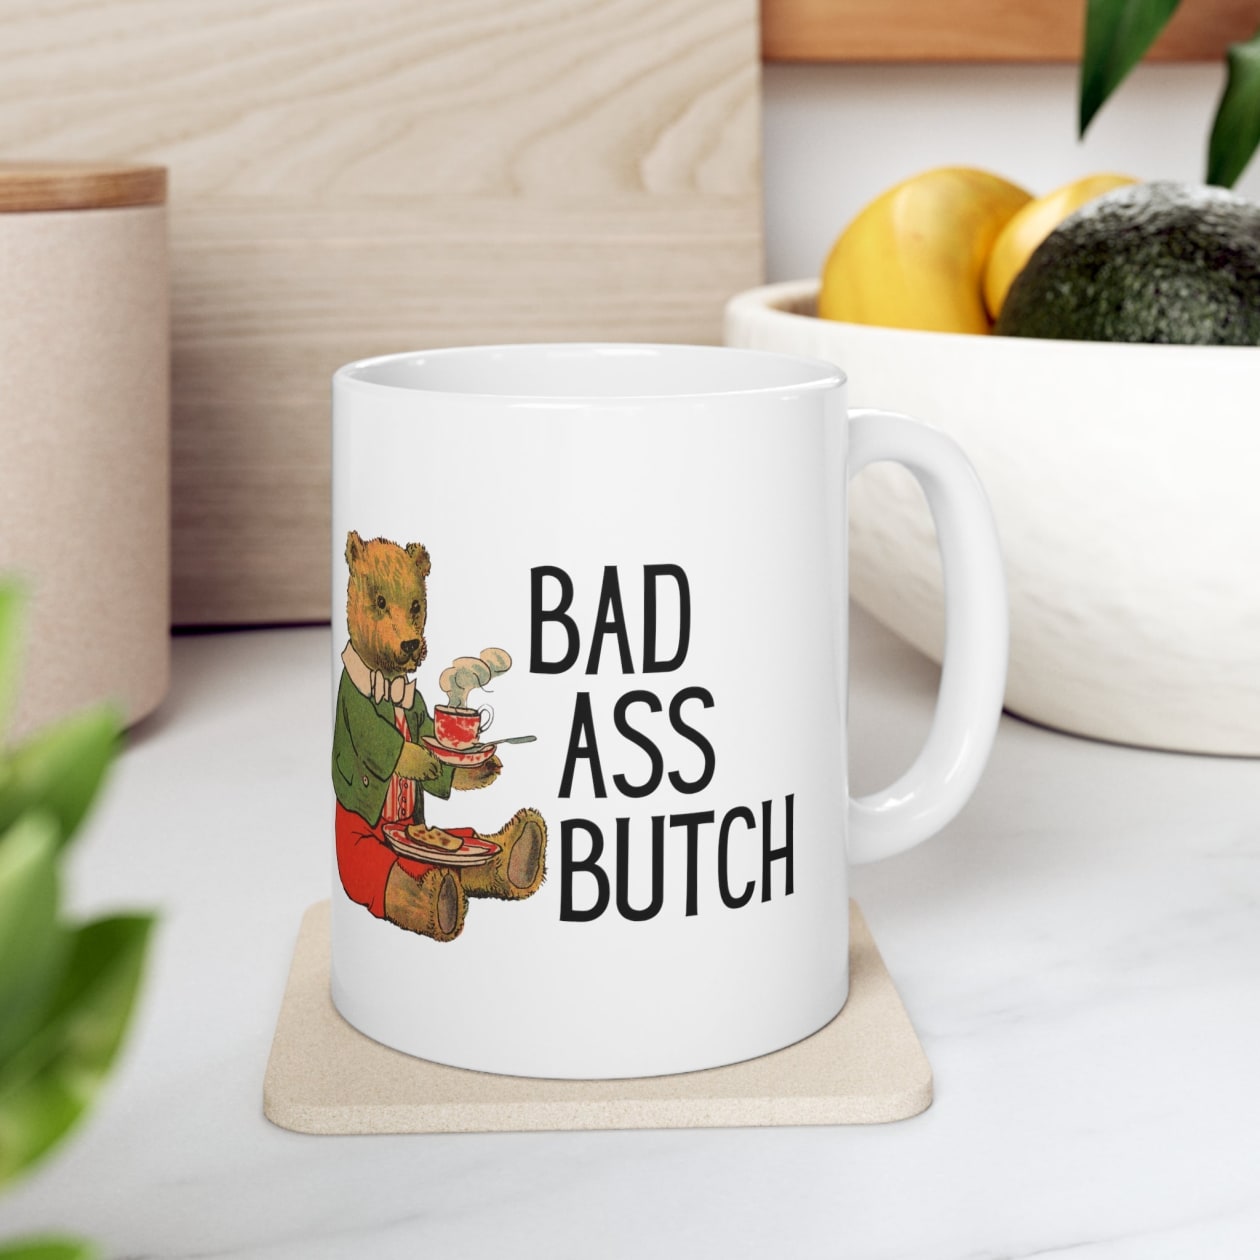 Bad Ass Butch Ceramic Mug 11oz - Size: 11oz